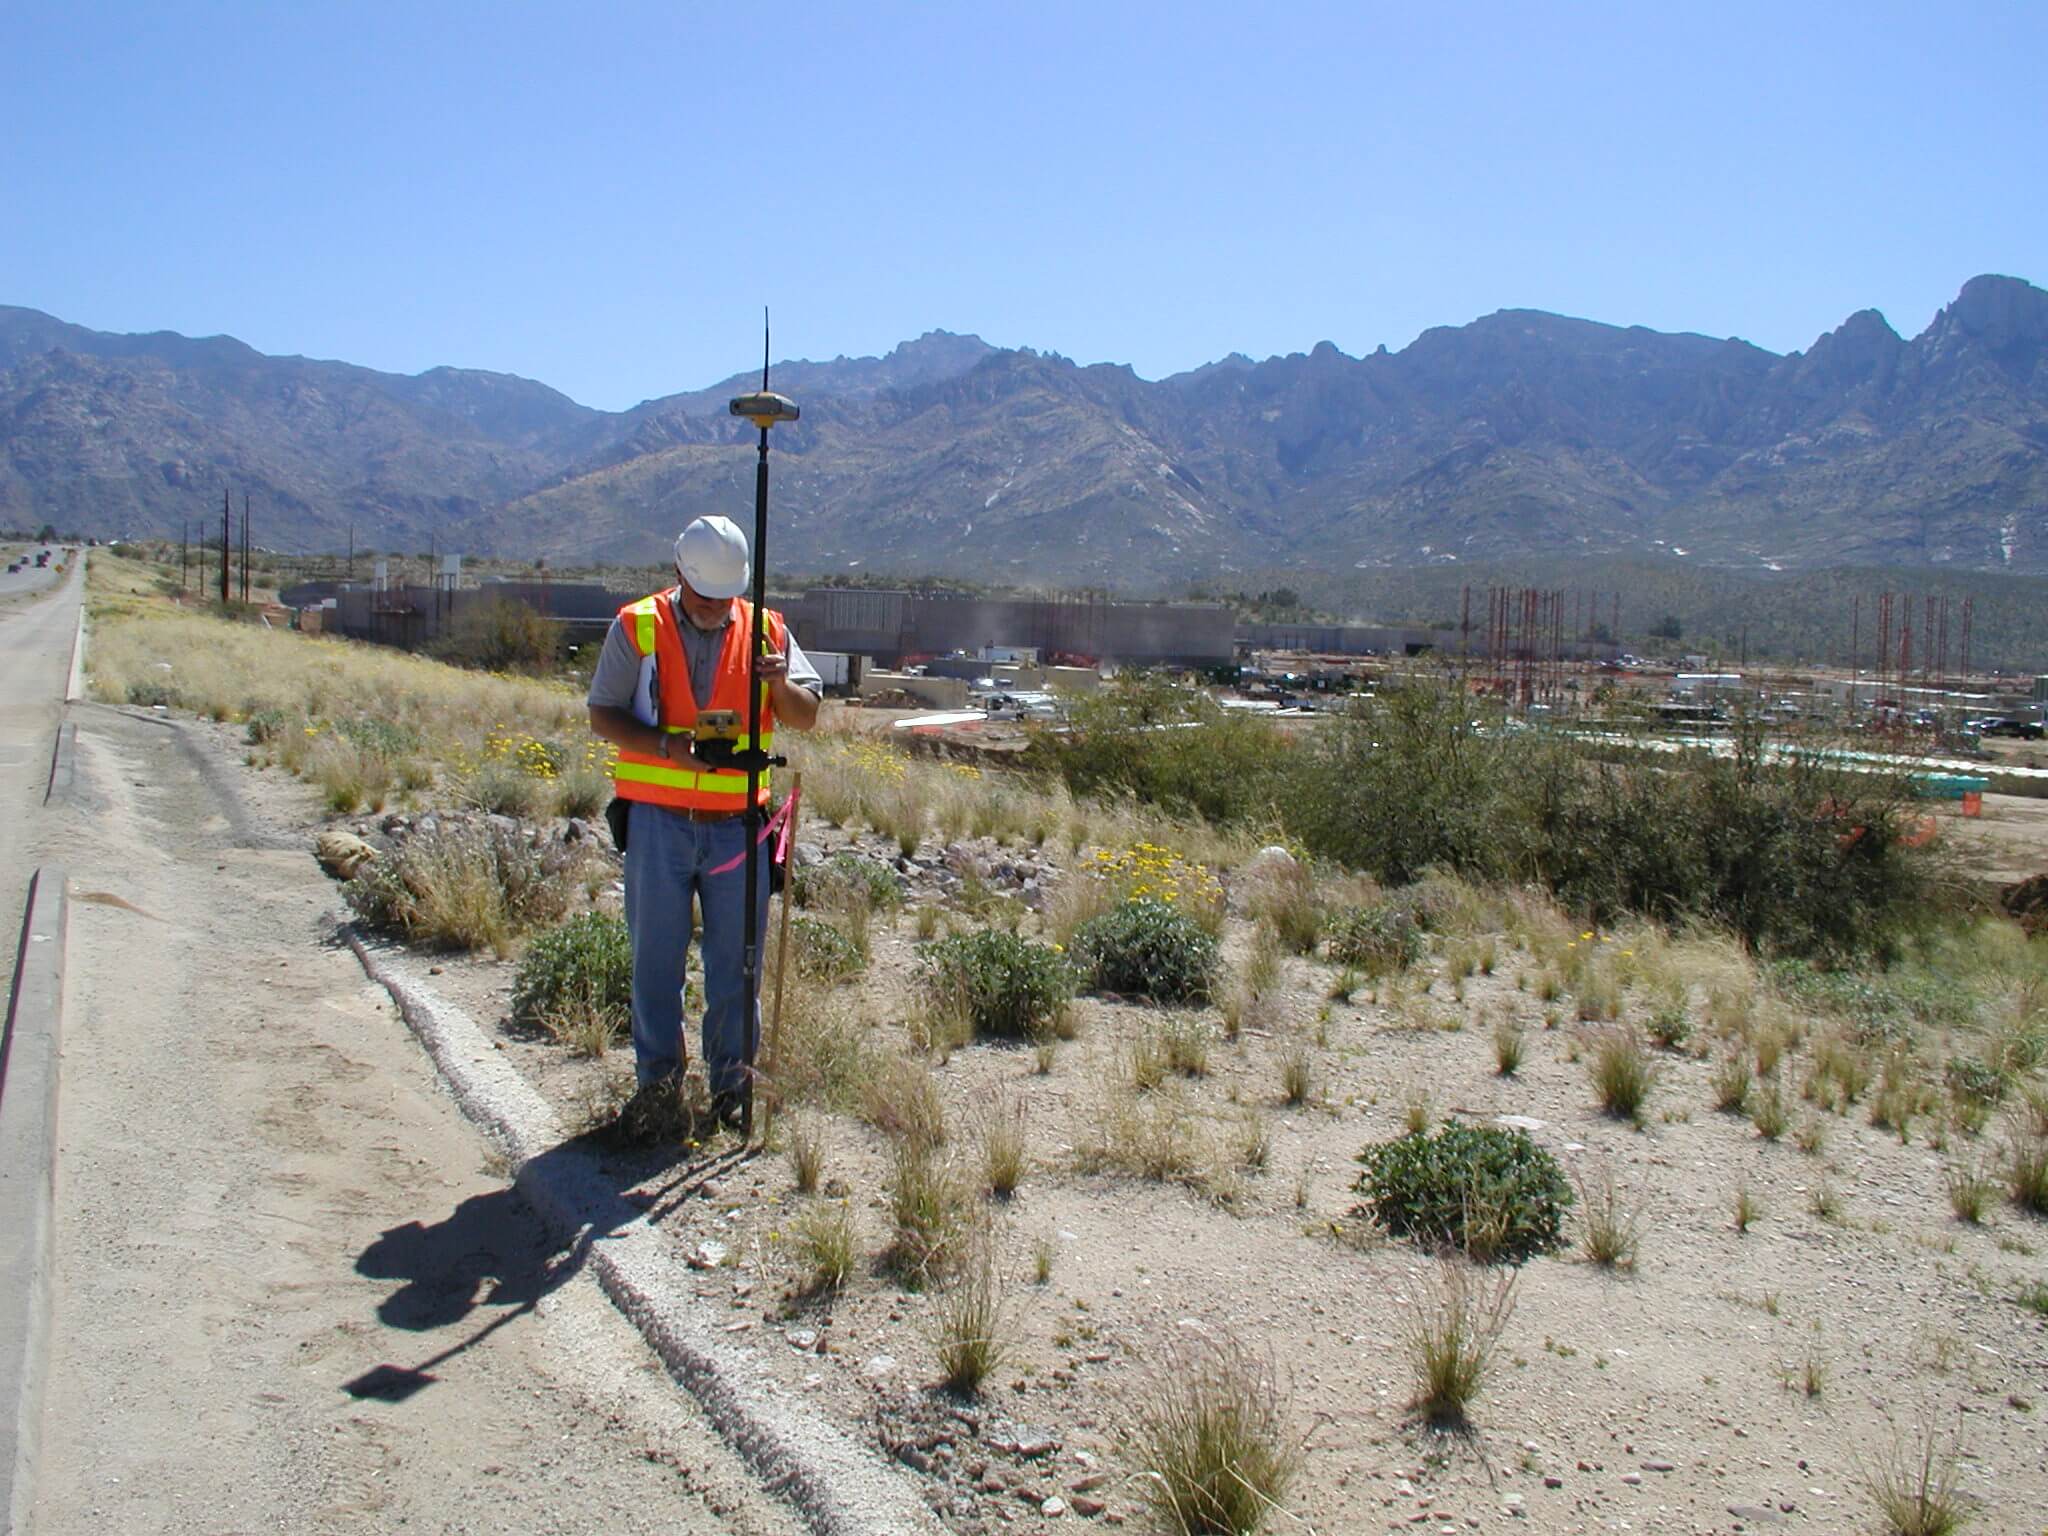 A land surveyor setting up surveying equipment